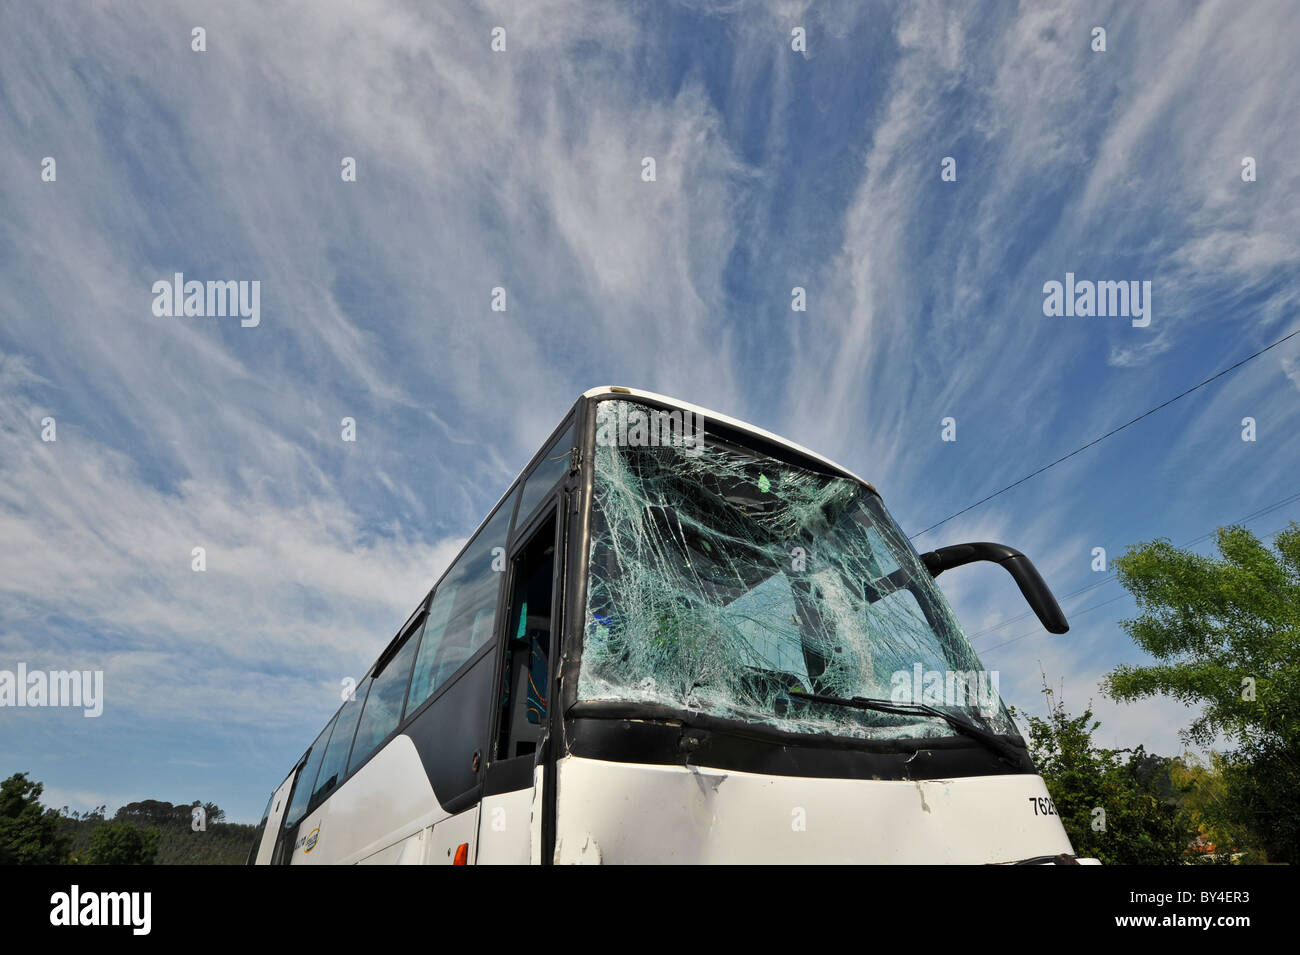 Distrutto con bus in frantumi il vetro del parabrezza dopo un incidente di macchina Foto Stock